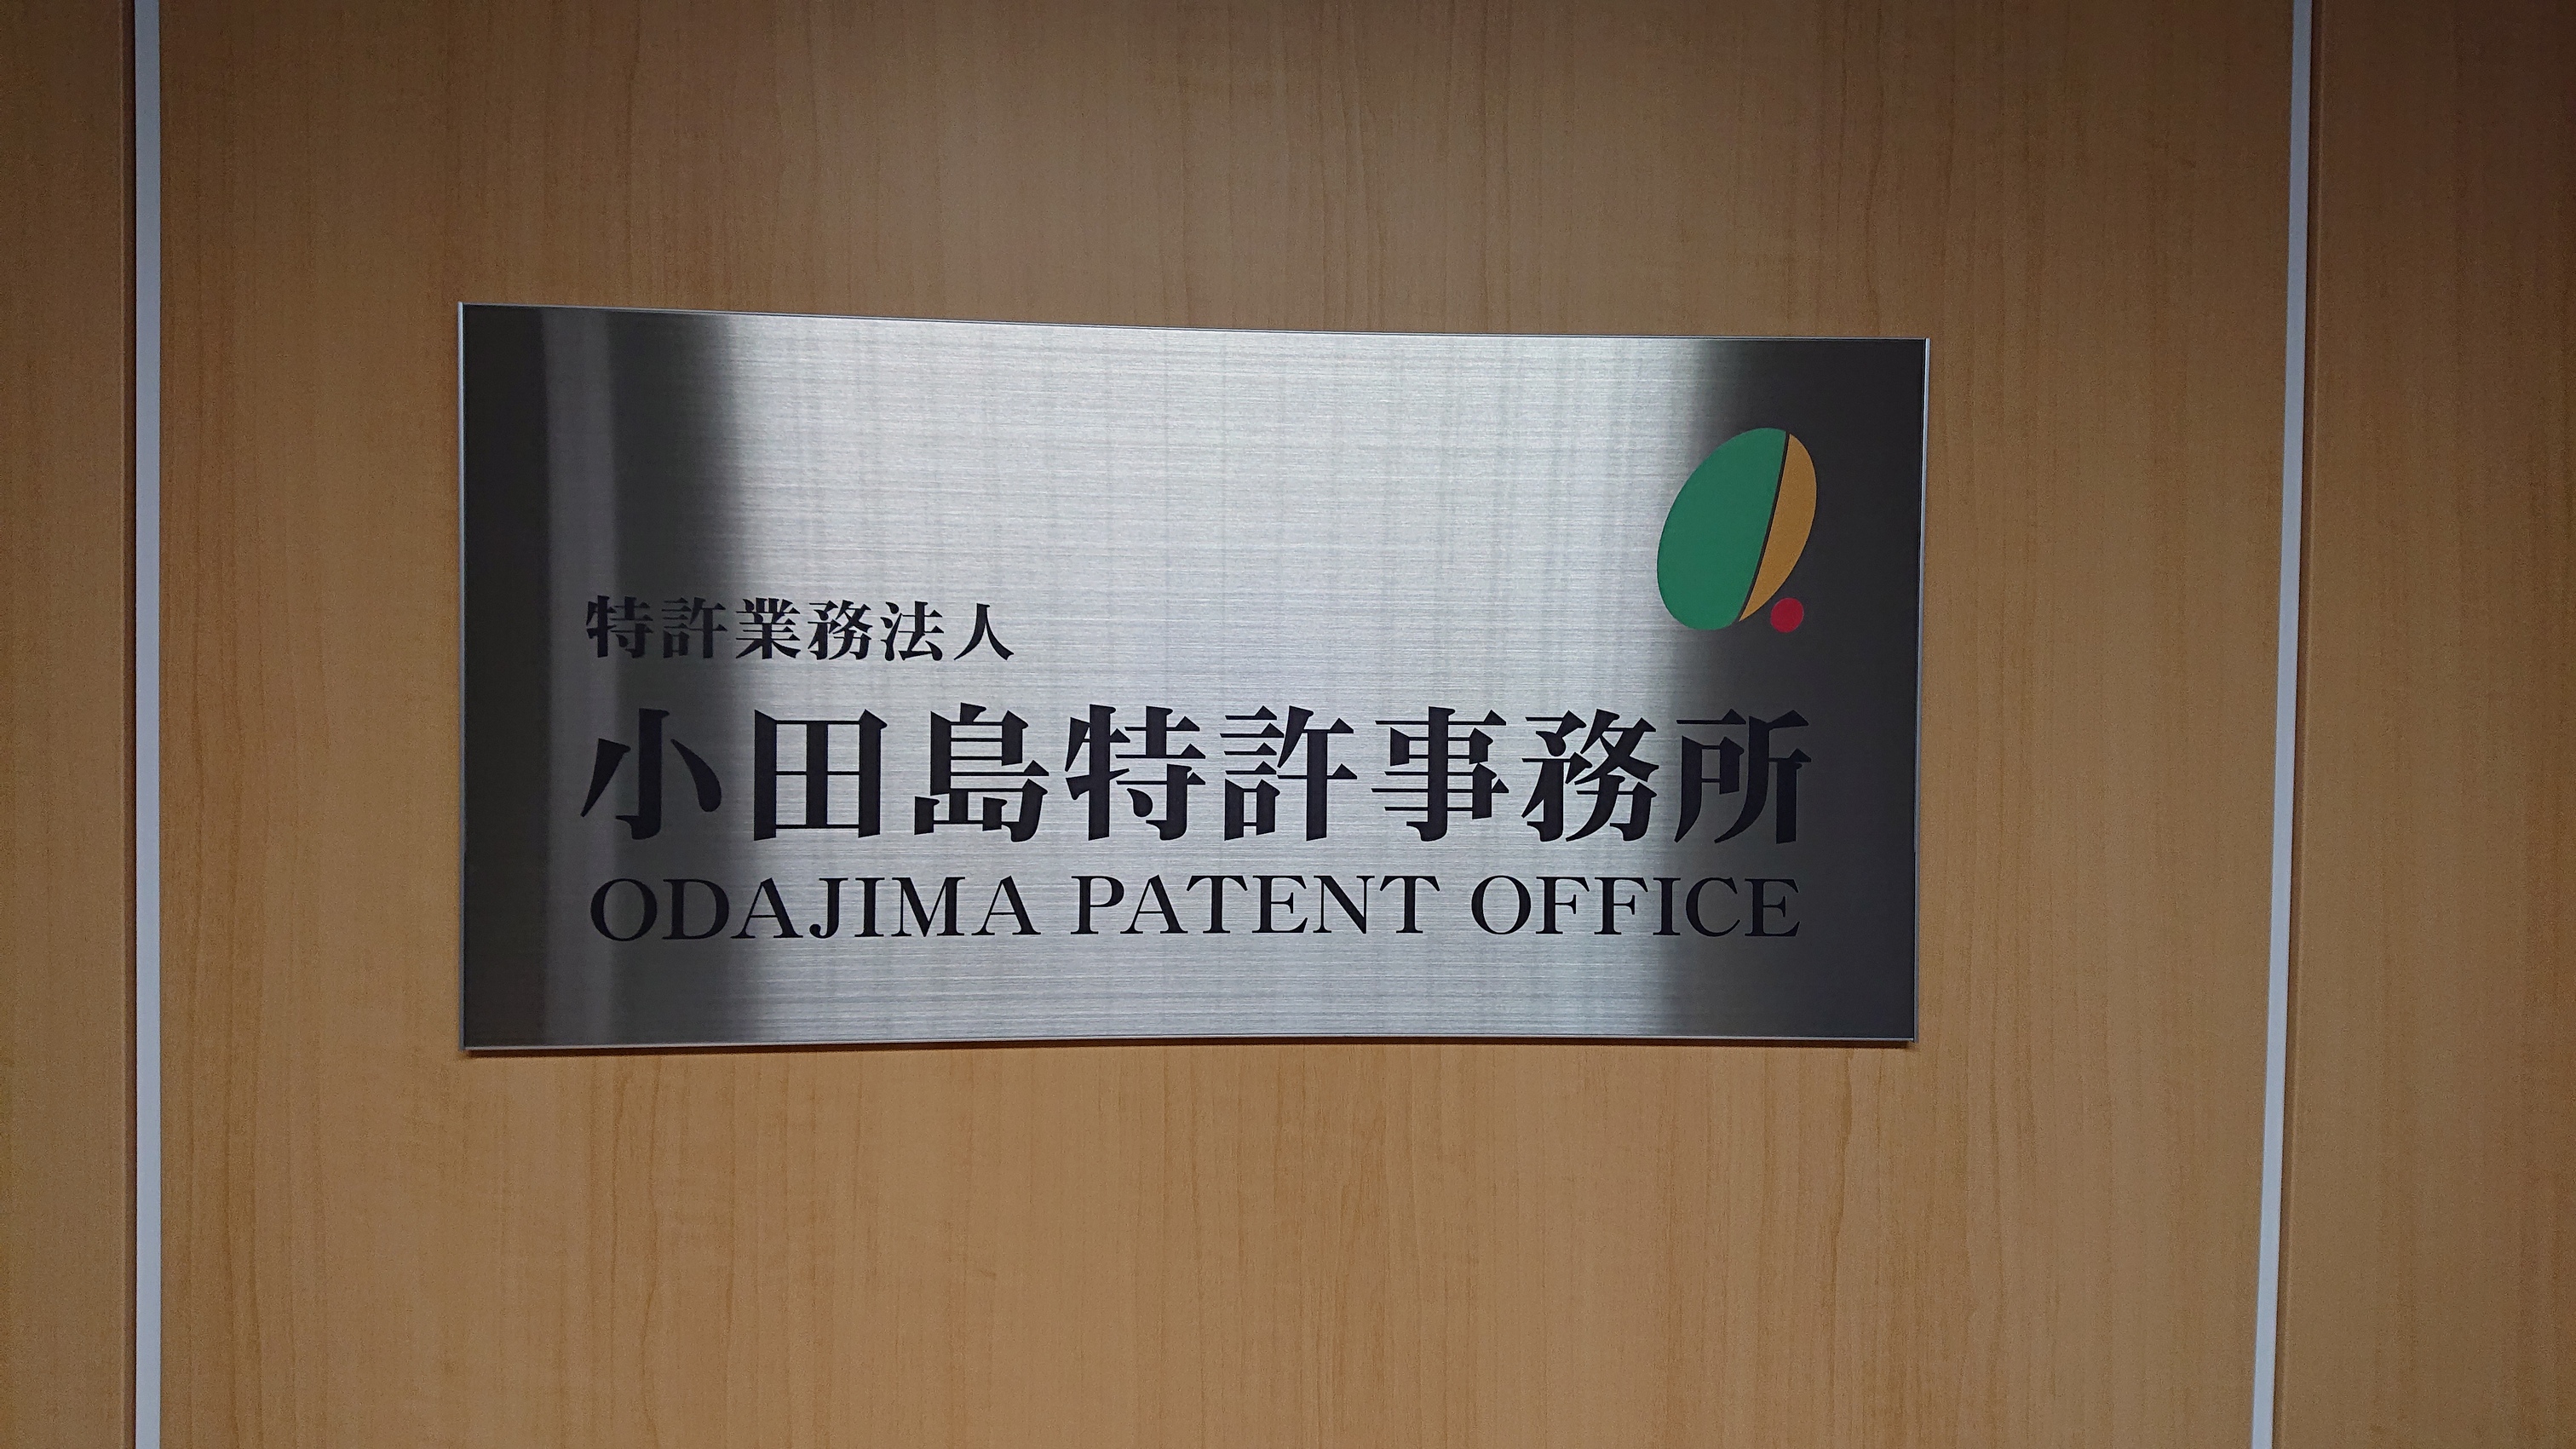 弁理士法人小田島特許事務所の求人